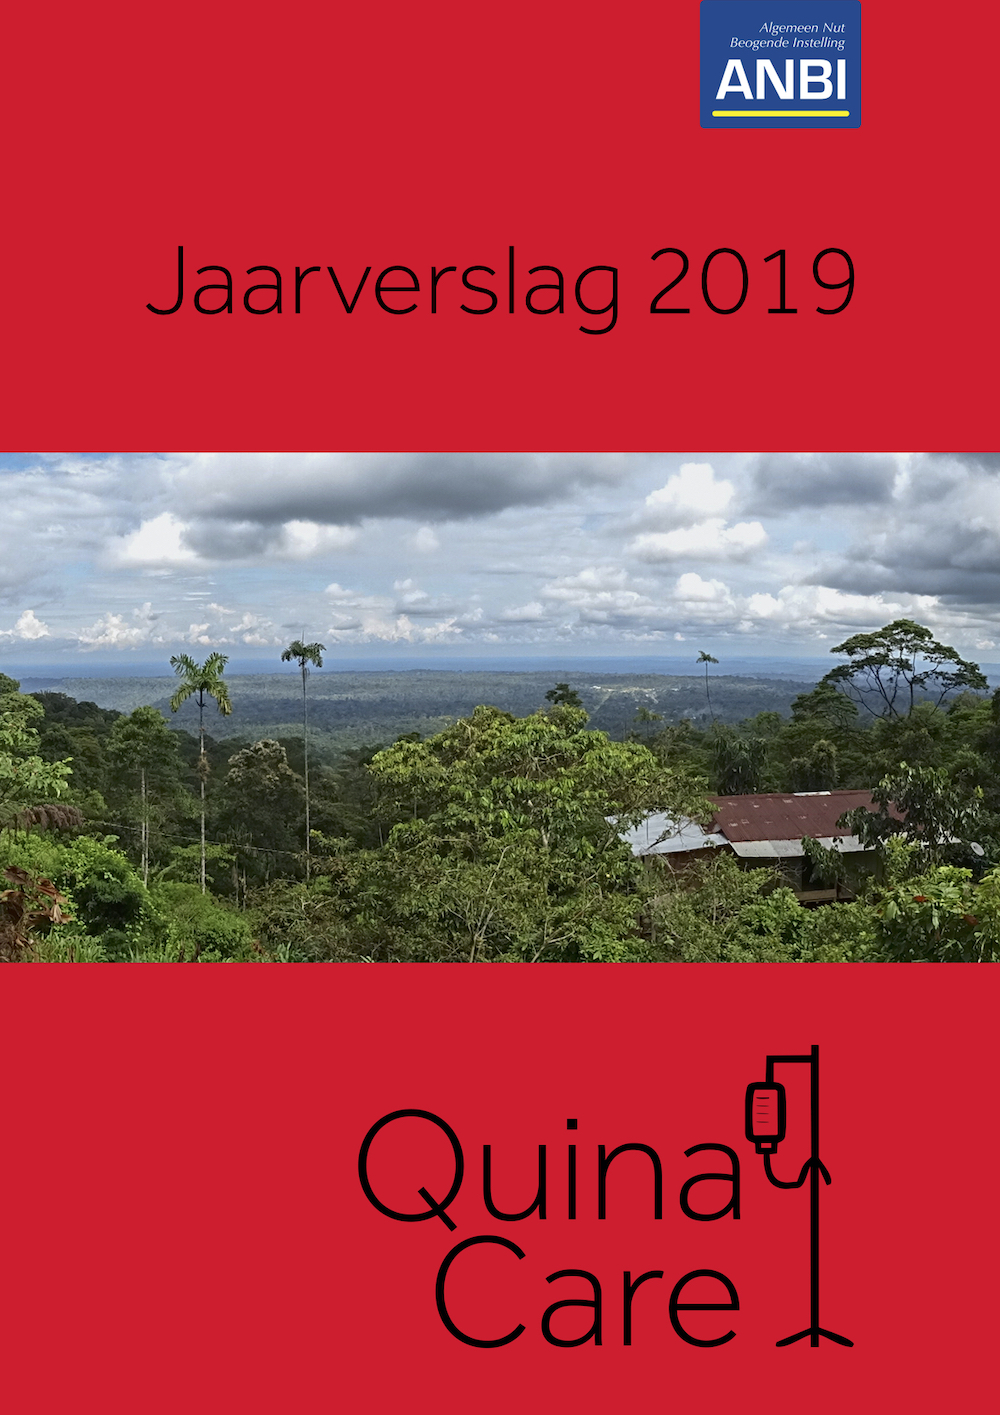 Quina Care - Jaarverslag 2019